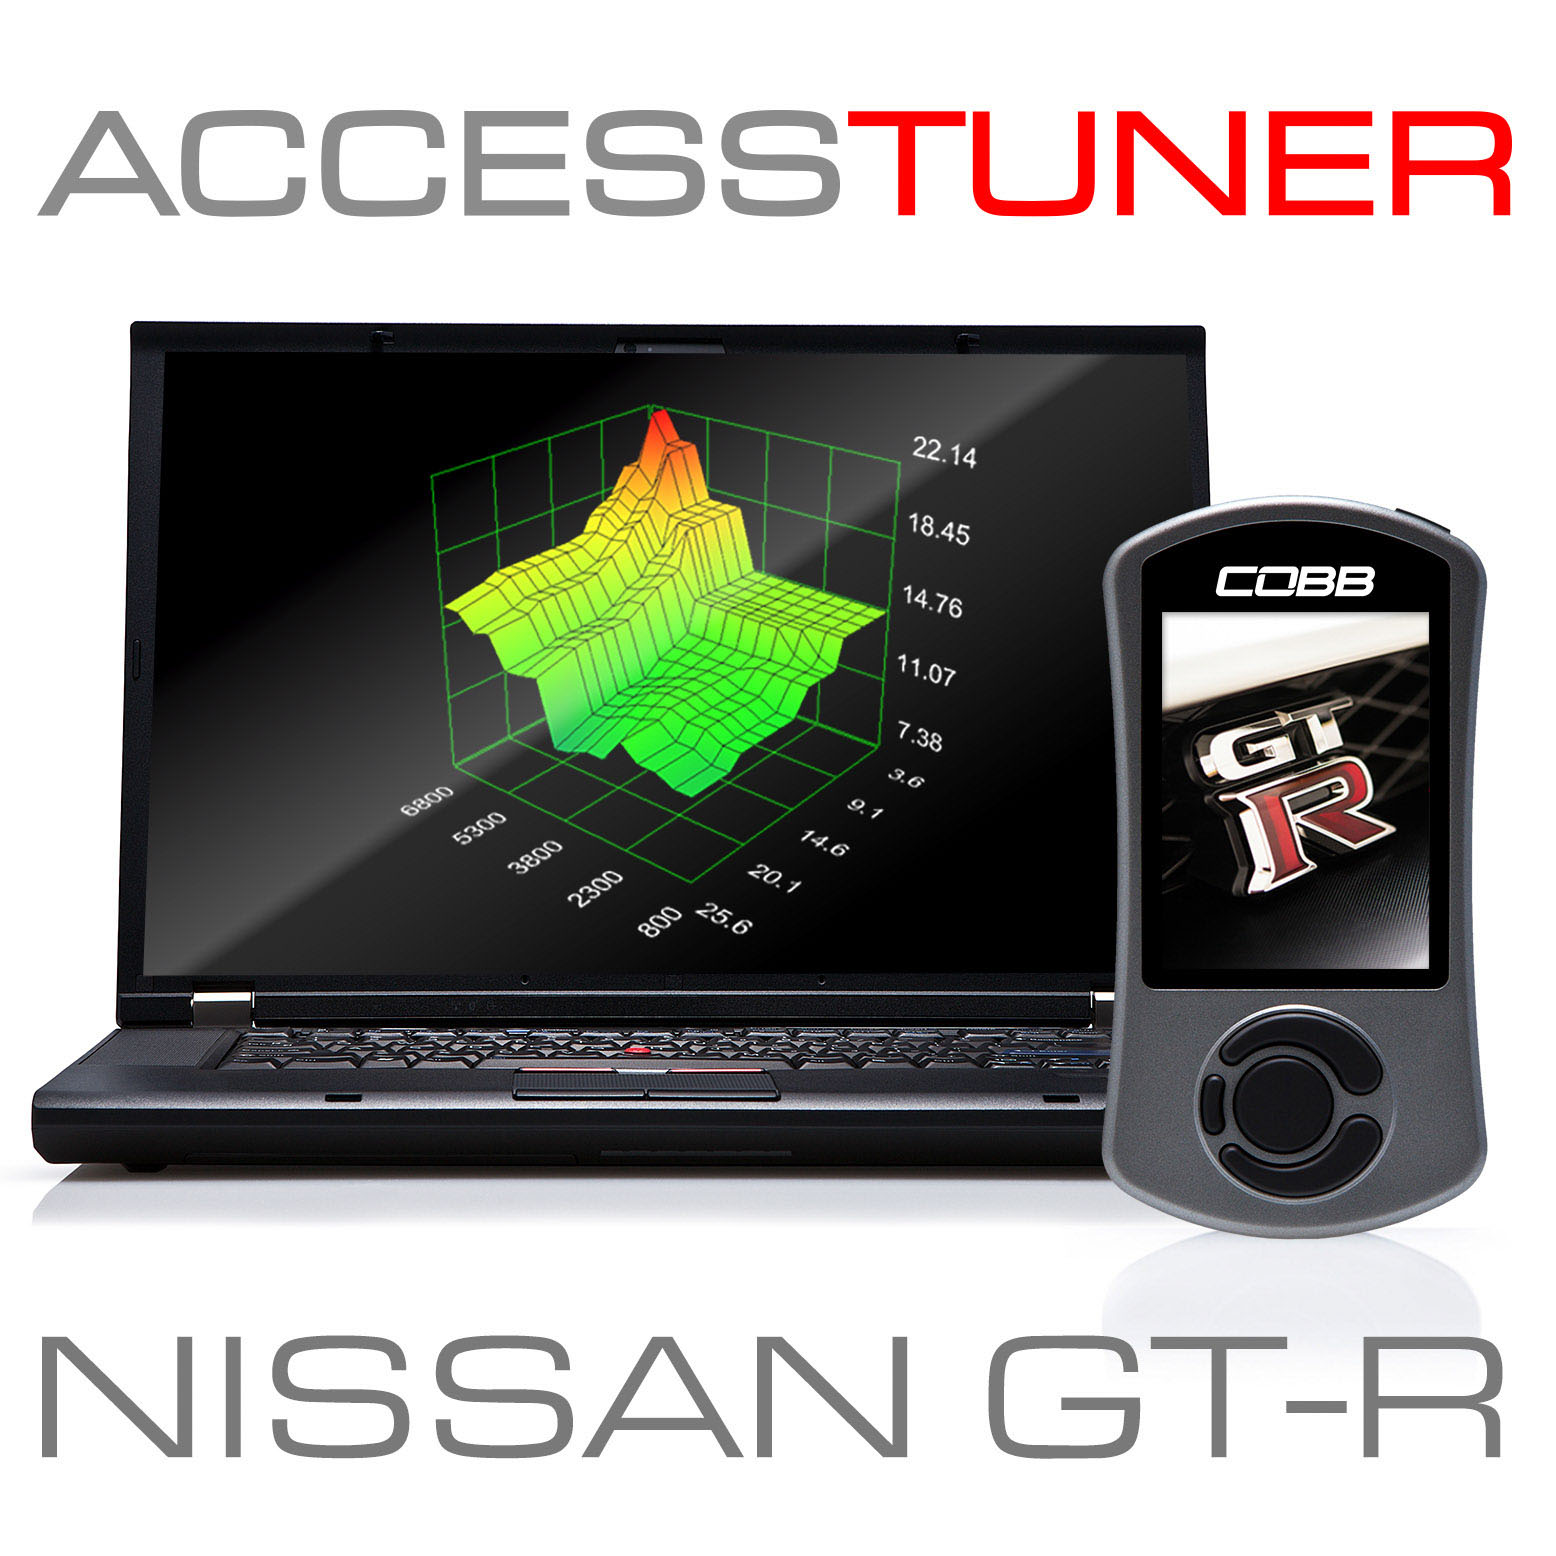 Nissan GT-R Accesstuner